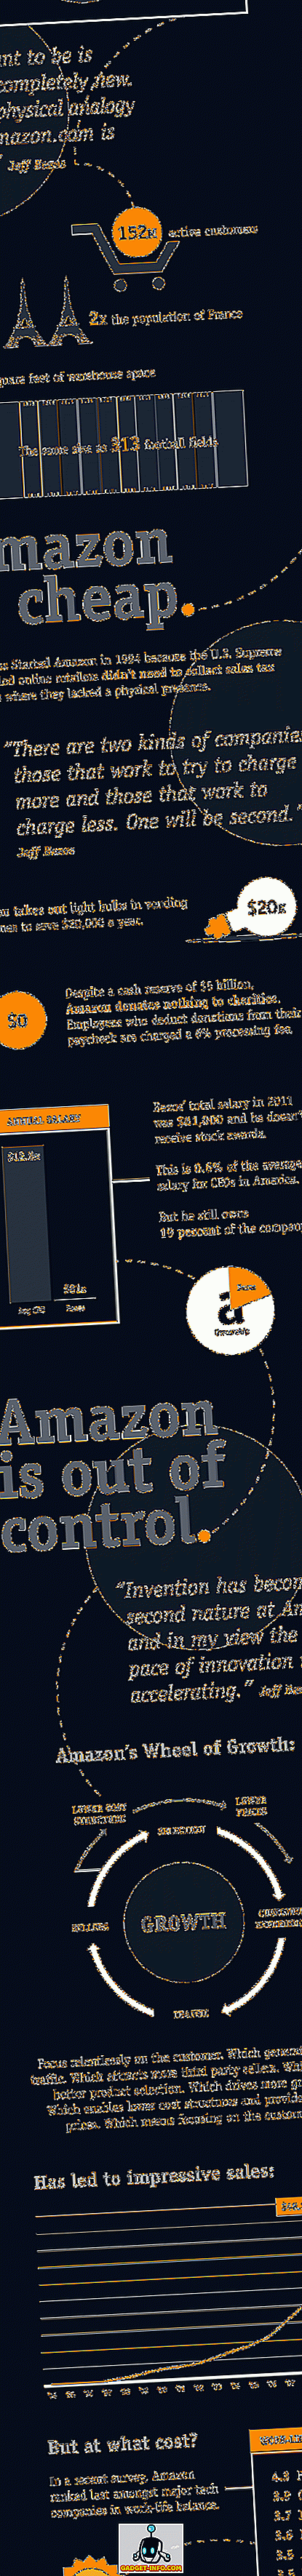 Amazon - İç Hikaye [Infographic]